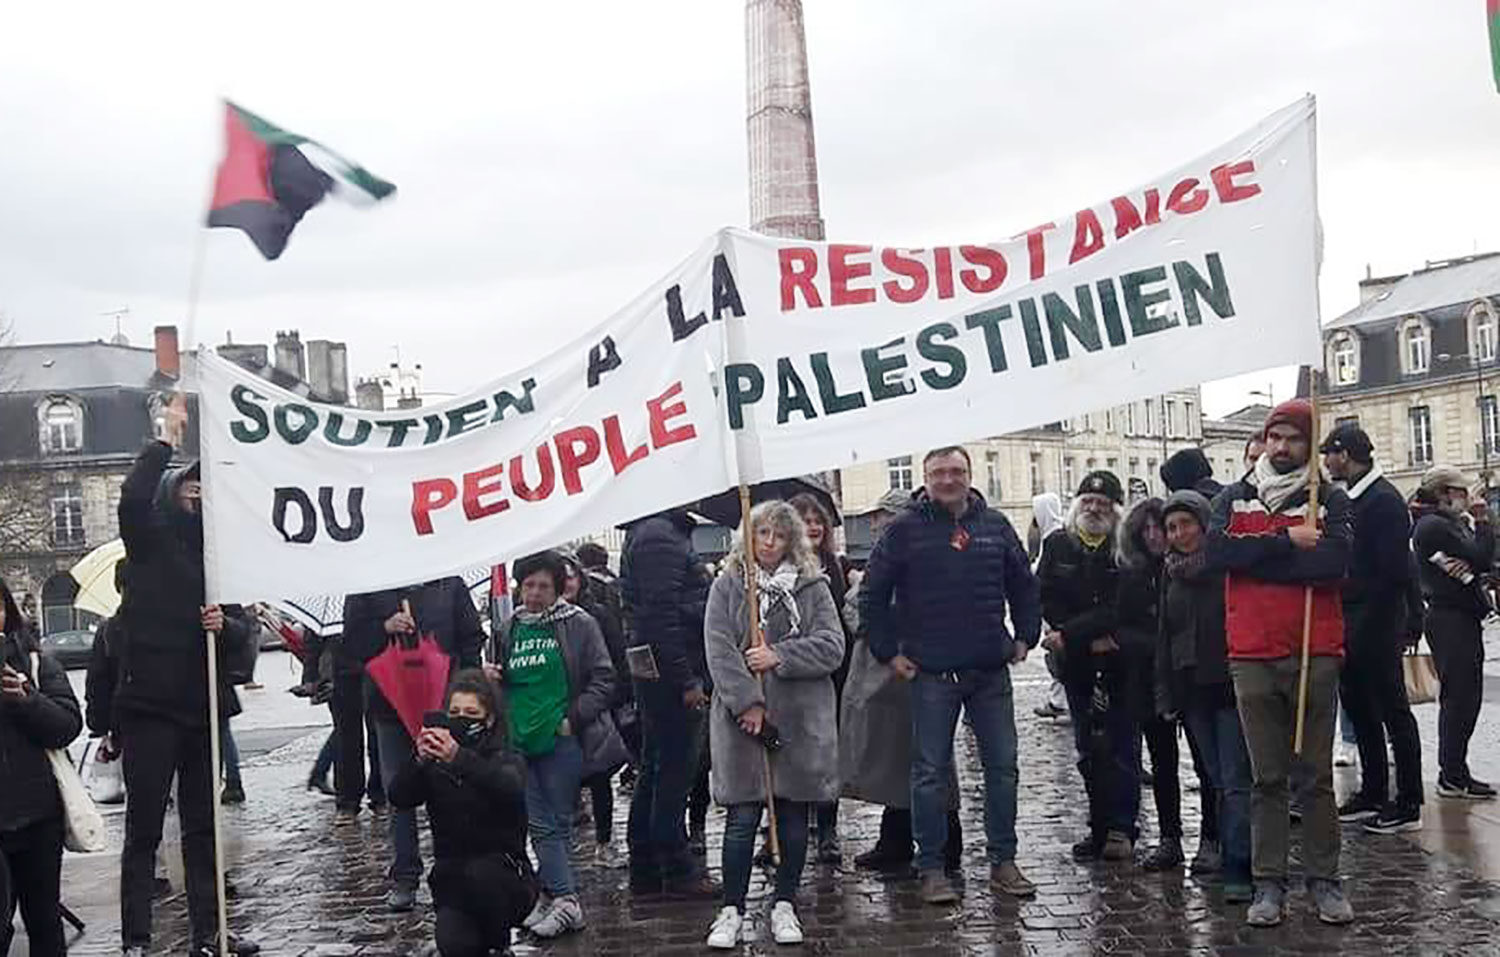 Manifestation pro palestinienne interdite à Bordeaux, le Comité Action Palestine maintient son rassemblement